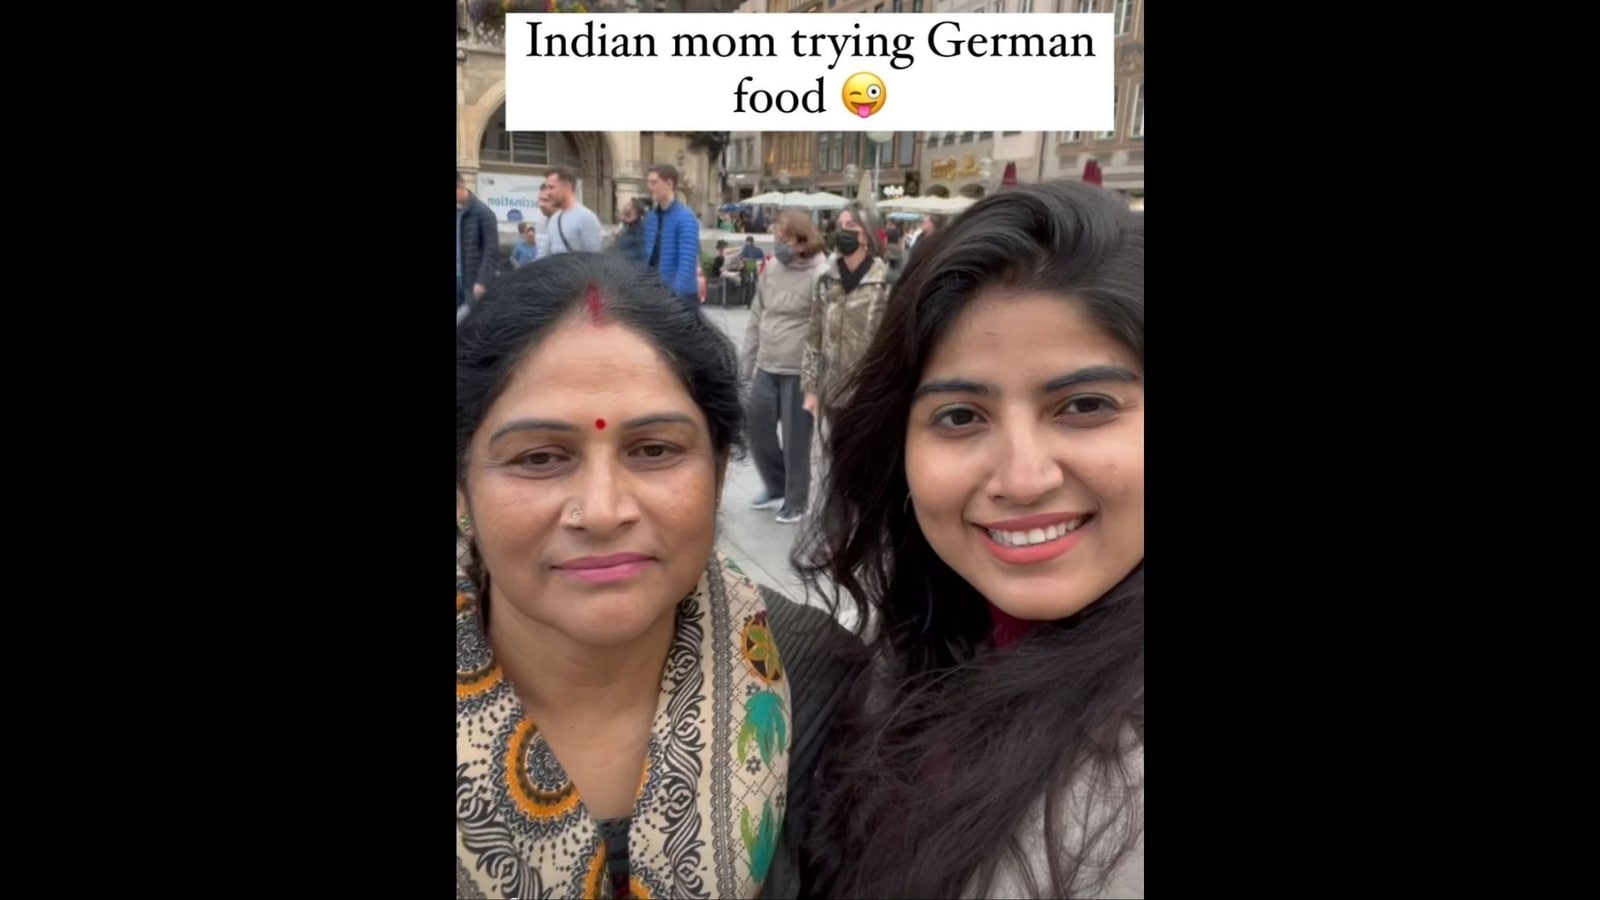 Indische Mutter probiert zum ersten Mal Brezel in Deutschland, ihre Reaktion geht viral |  Beliebt